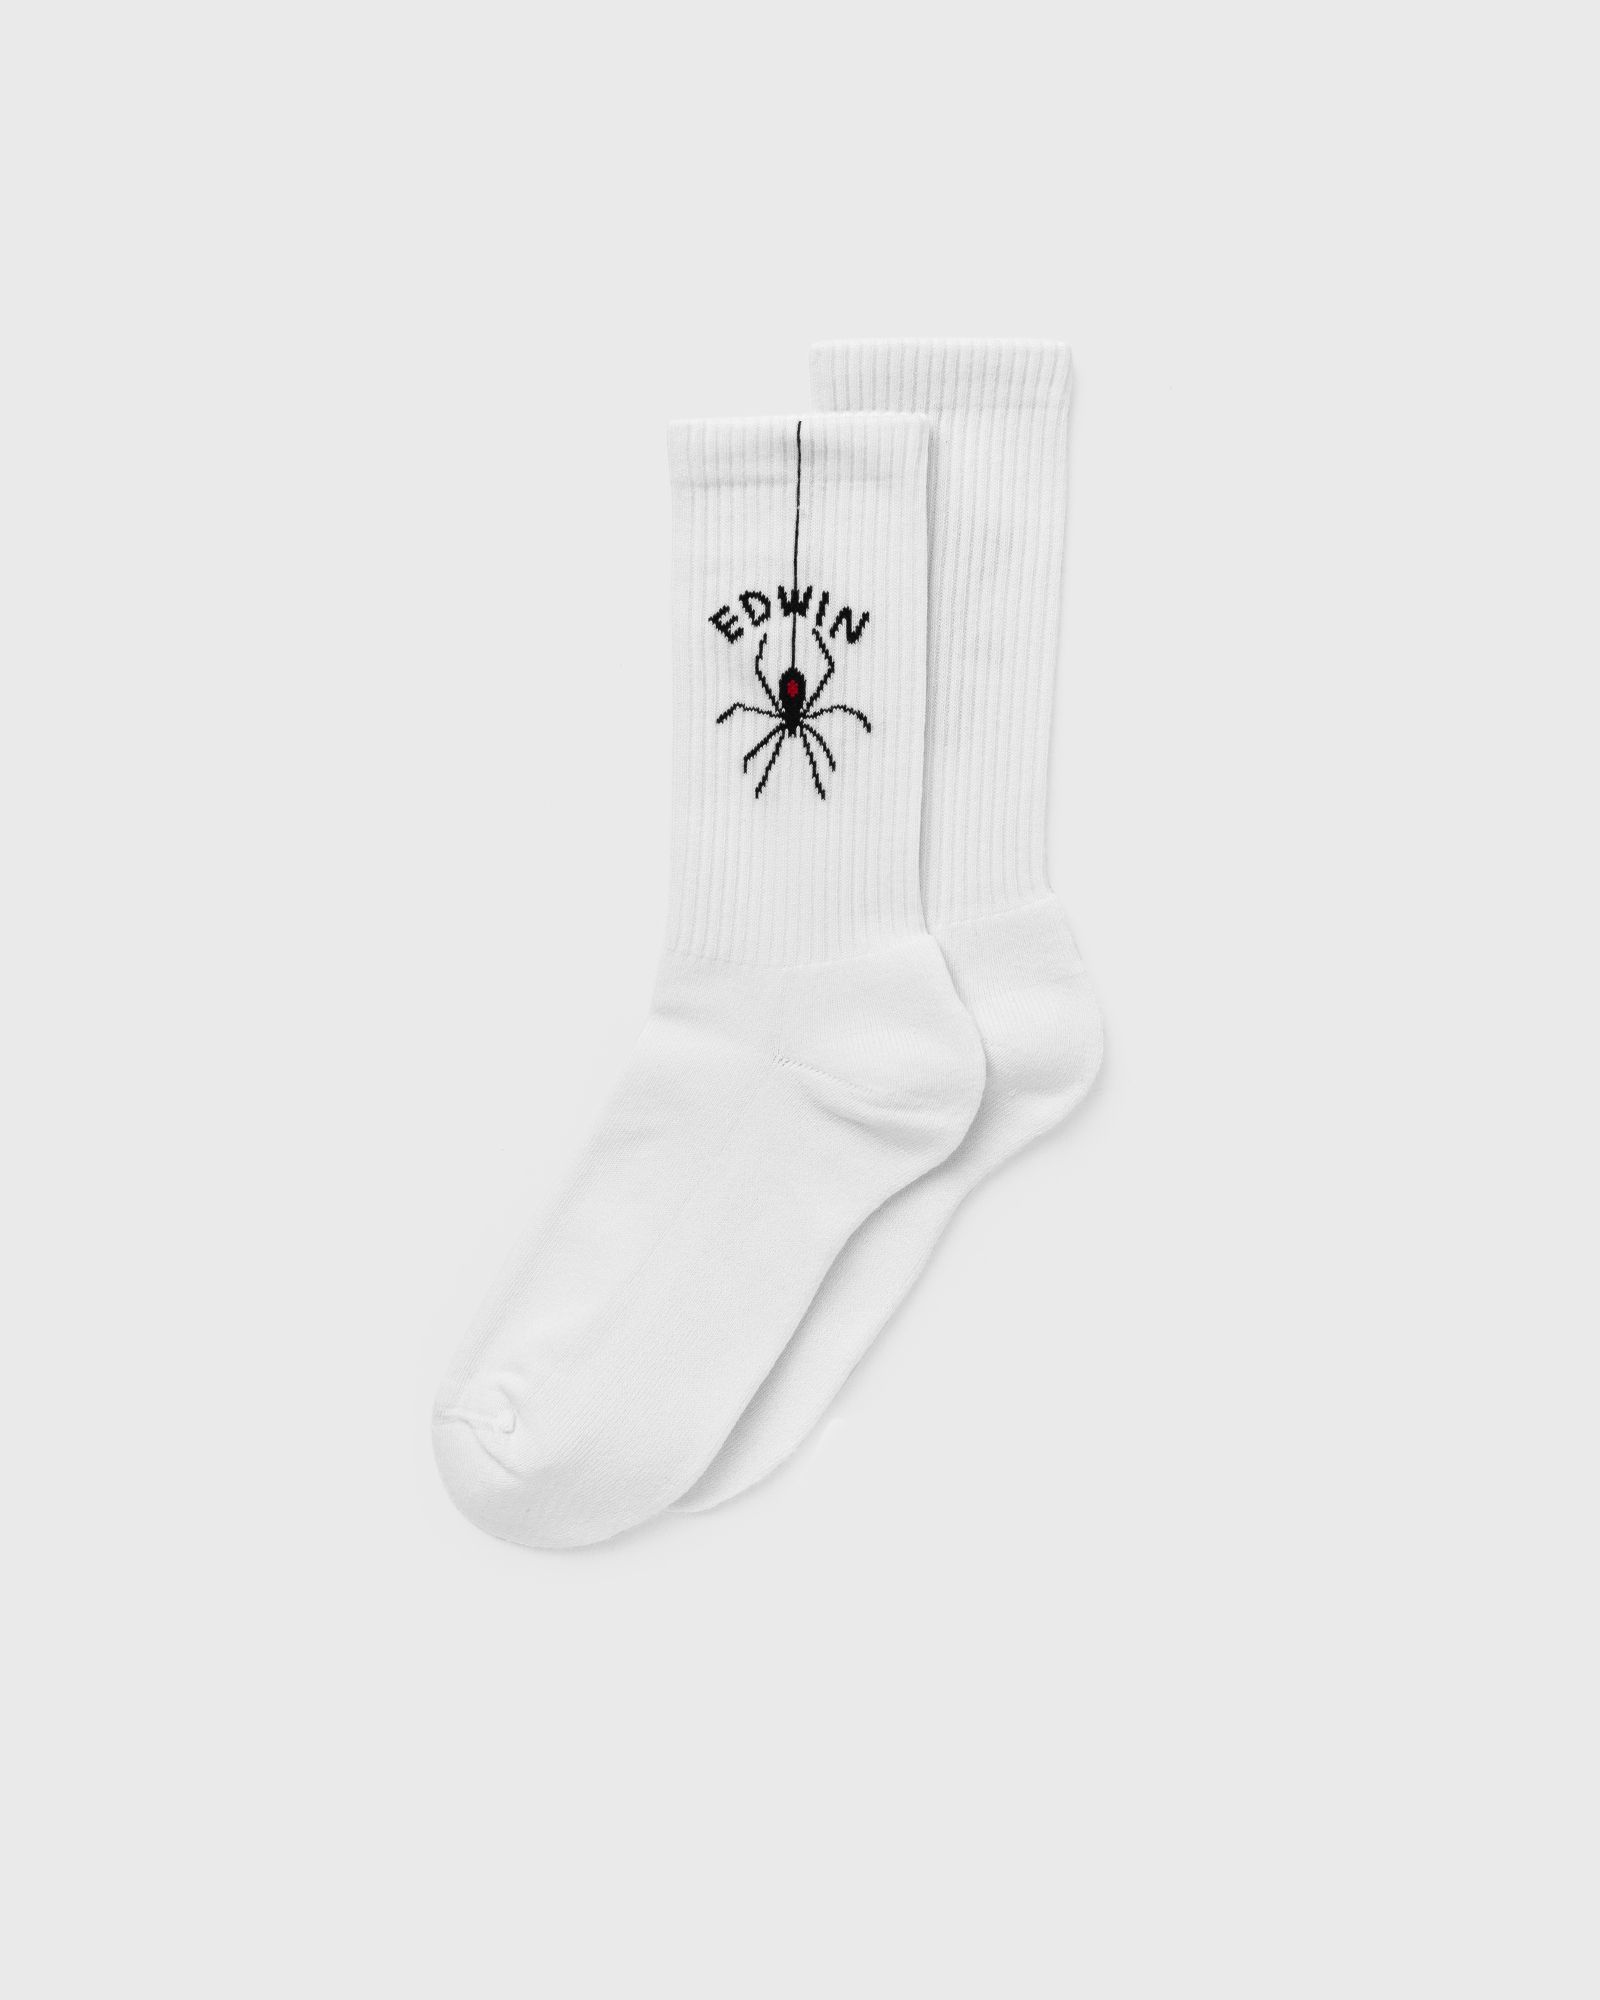 Edwin - spider socks men socks white in größe:one size